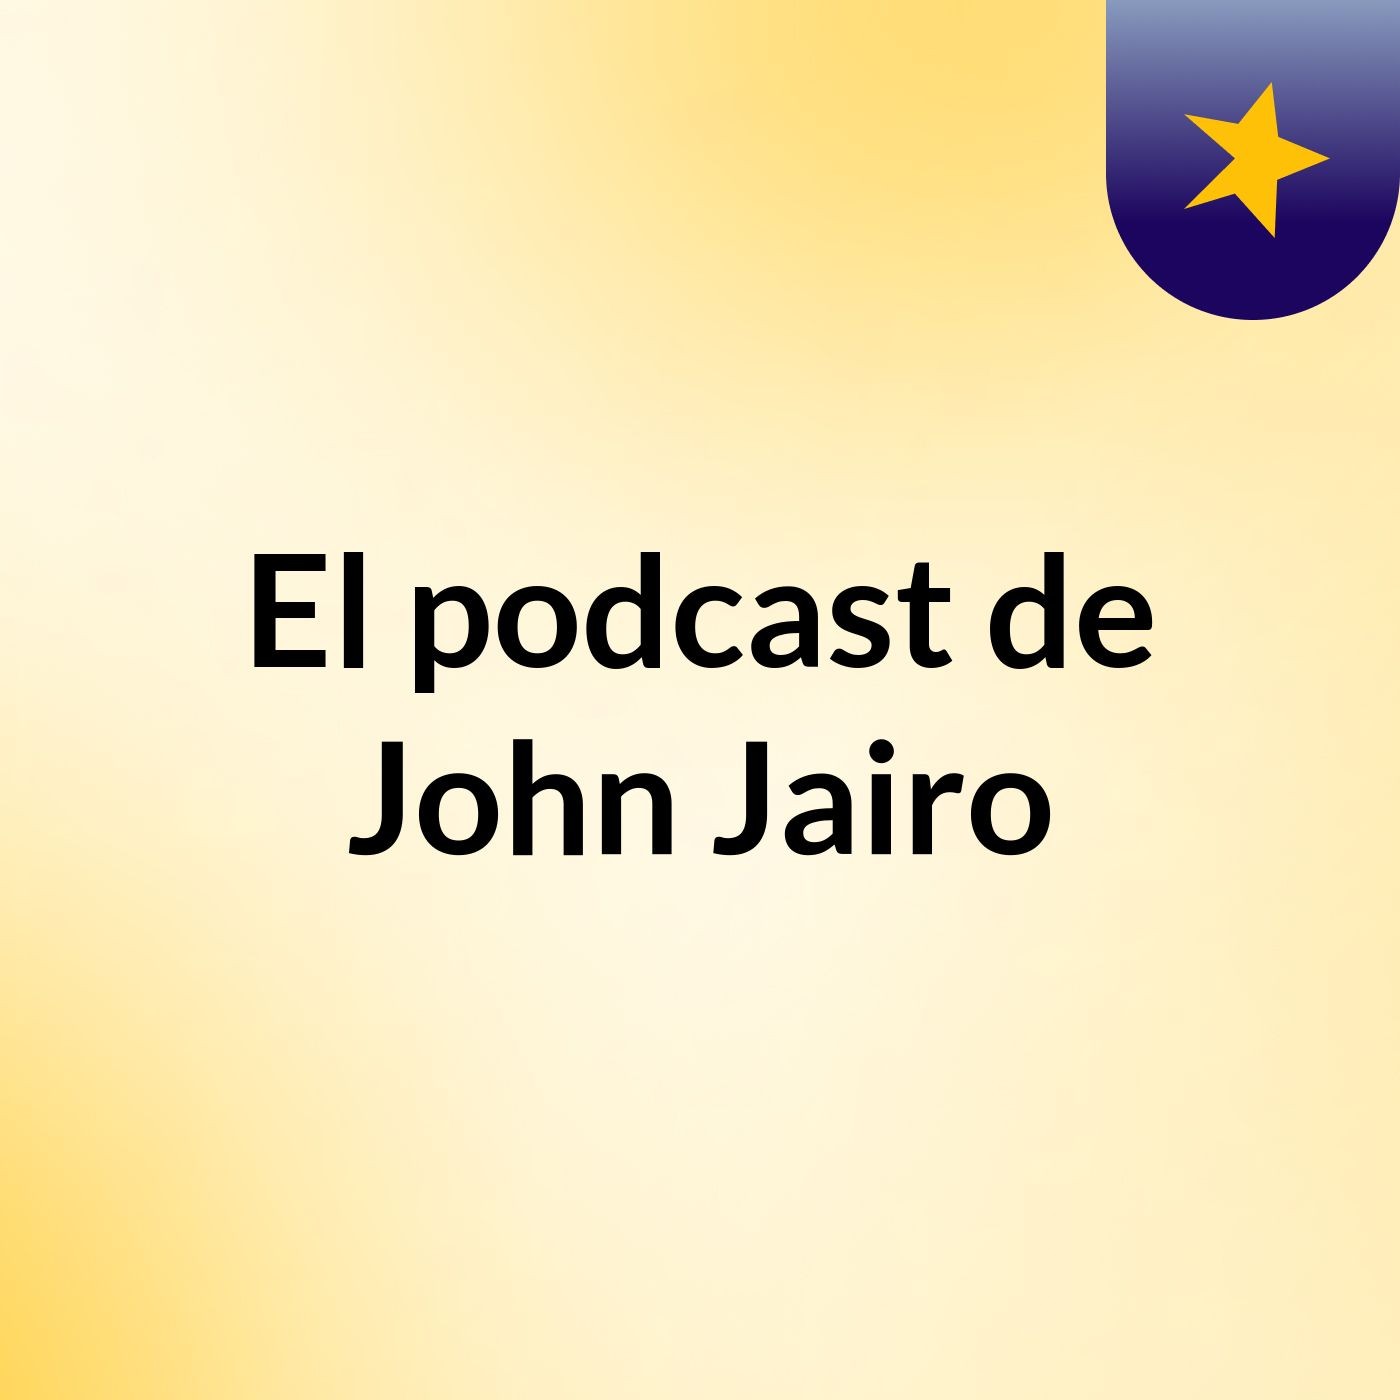 El podcast de John Jairo